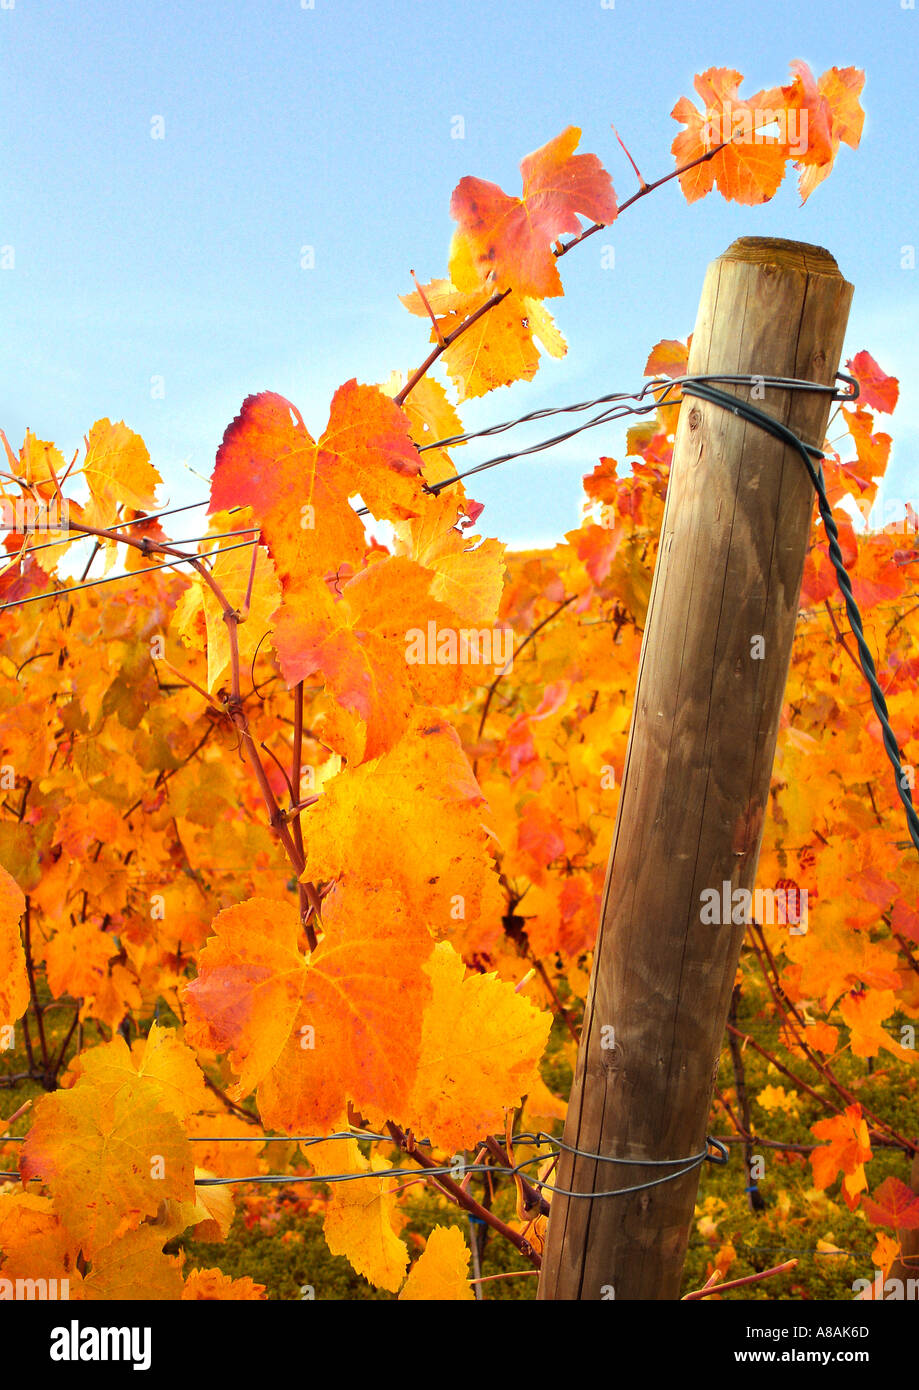 coulorful leaves on a vine hebstlich gefärbtes Weinlaub Stock Photo